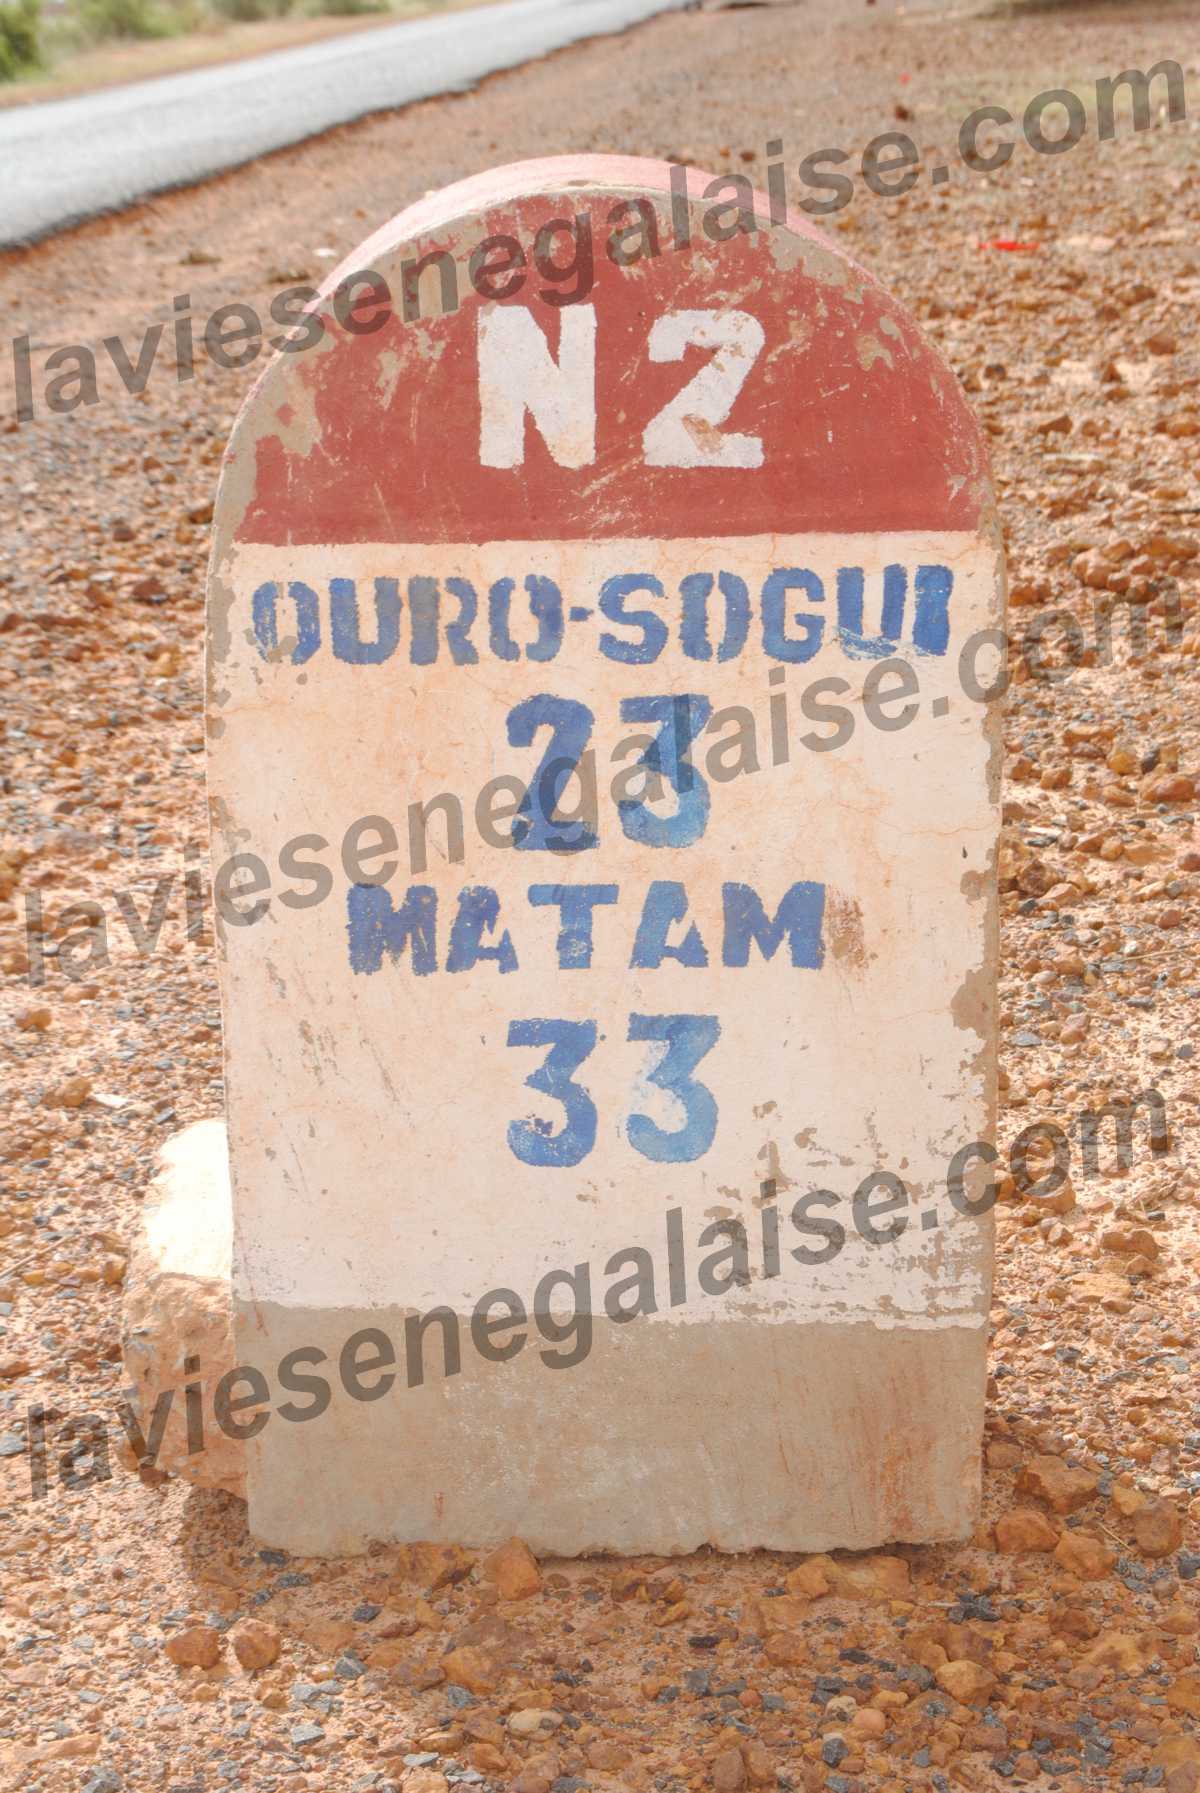 Route de Matam-laviesenegalaise